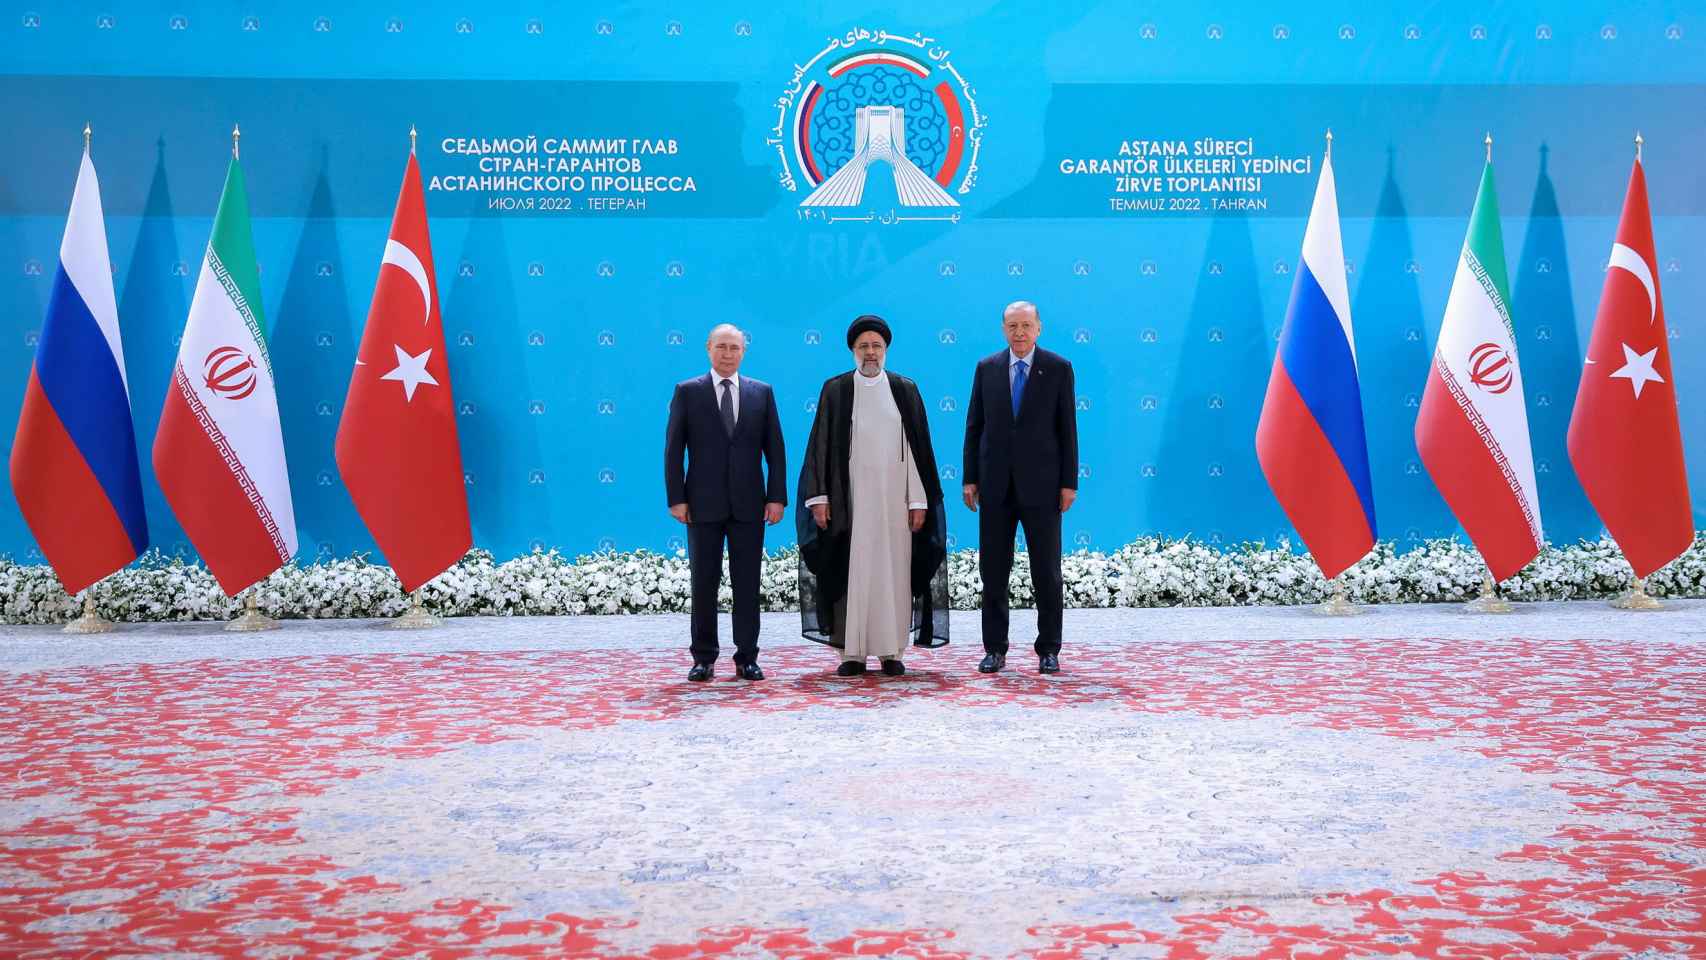 El presidente ruso, Vladimir Putin , el presidente turco, Recep Tayyip Erdogan, y el presidente iraní, Ebrahim Raisi, se reúnen antes de una cumbre de líderes de los estados garantes del proceso de Astana.